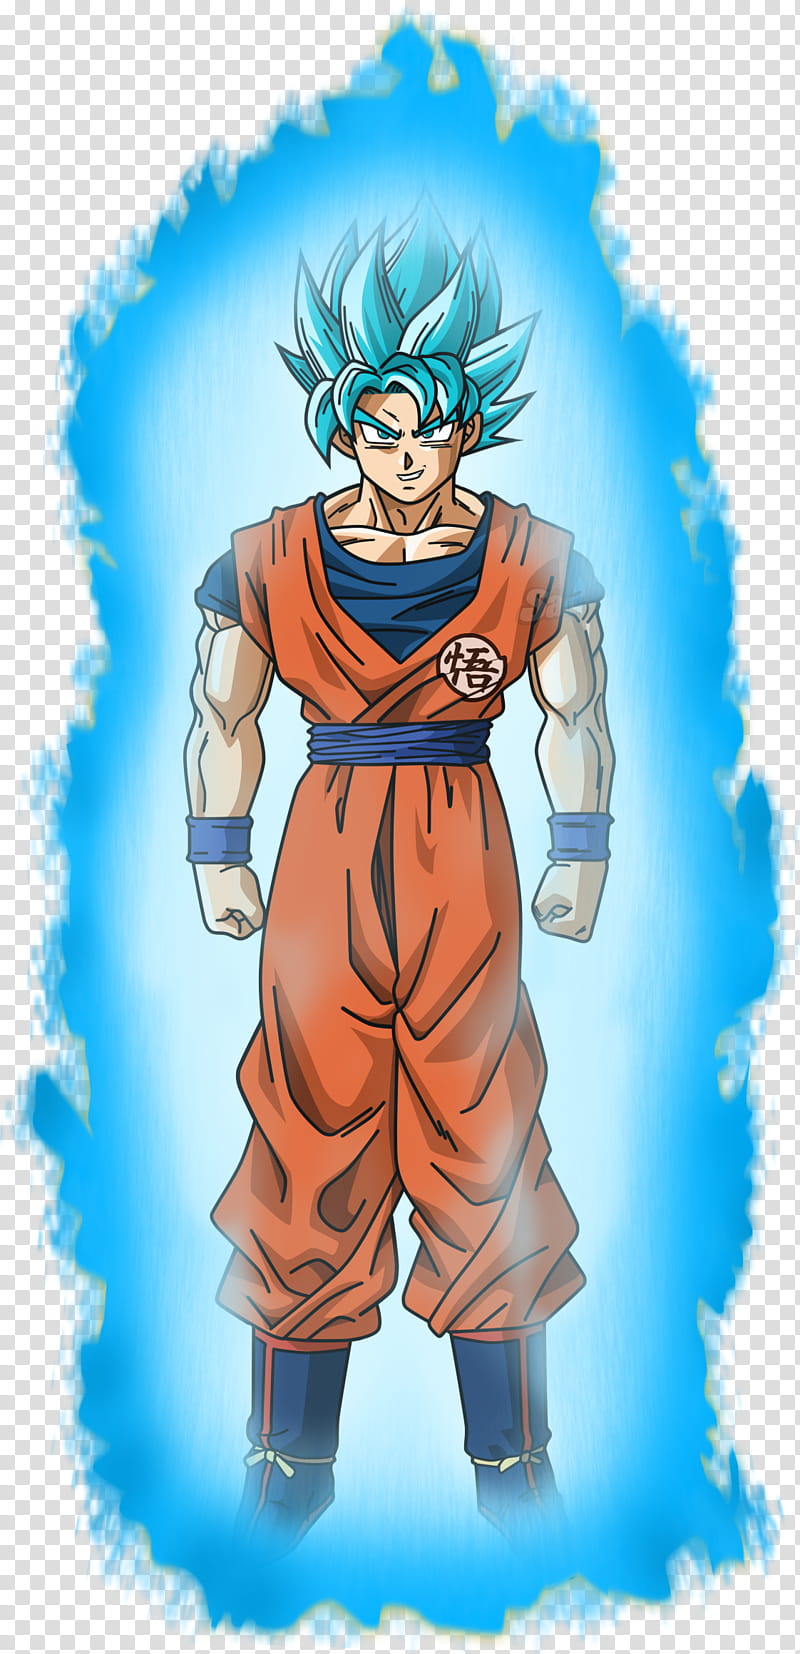 Goku SSJ Blue v Aura transparent background PNG clipart